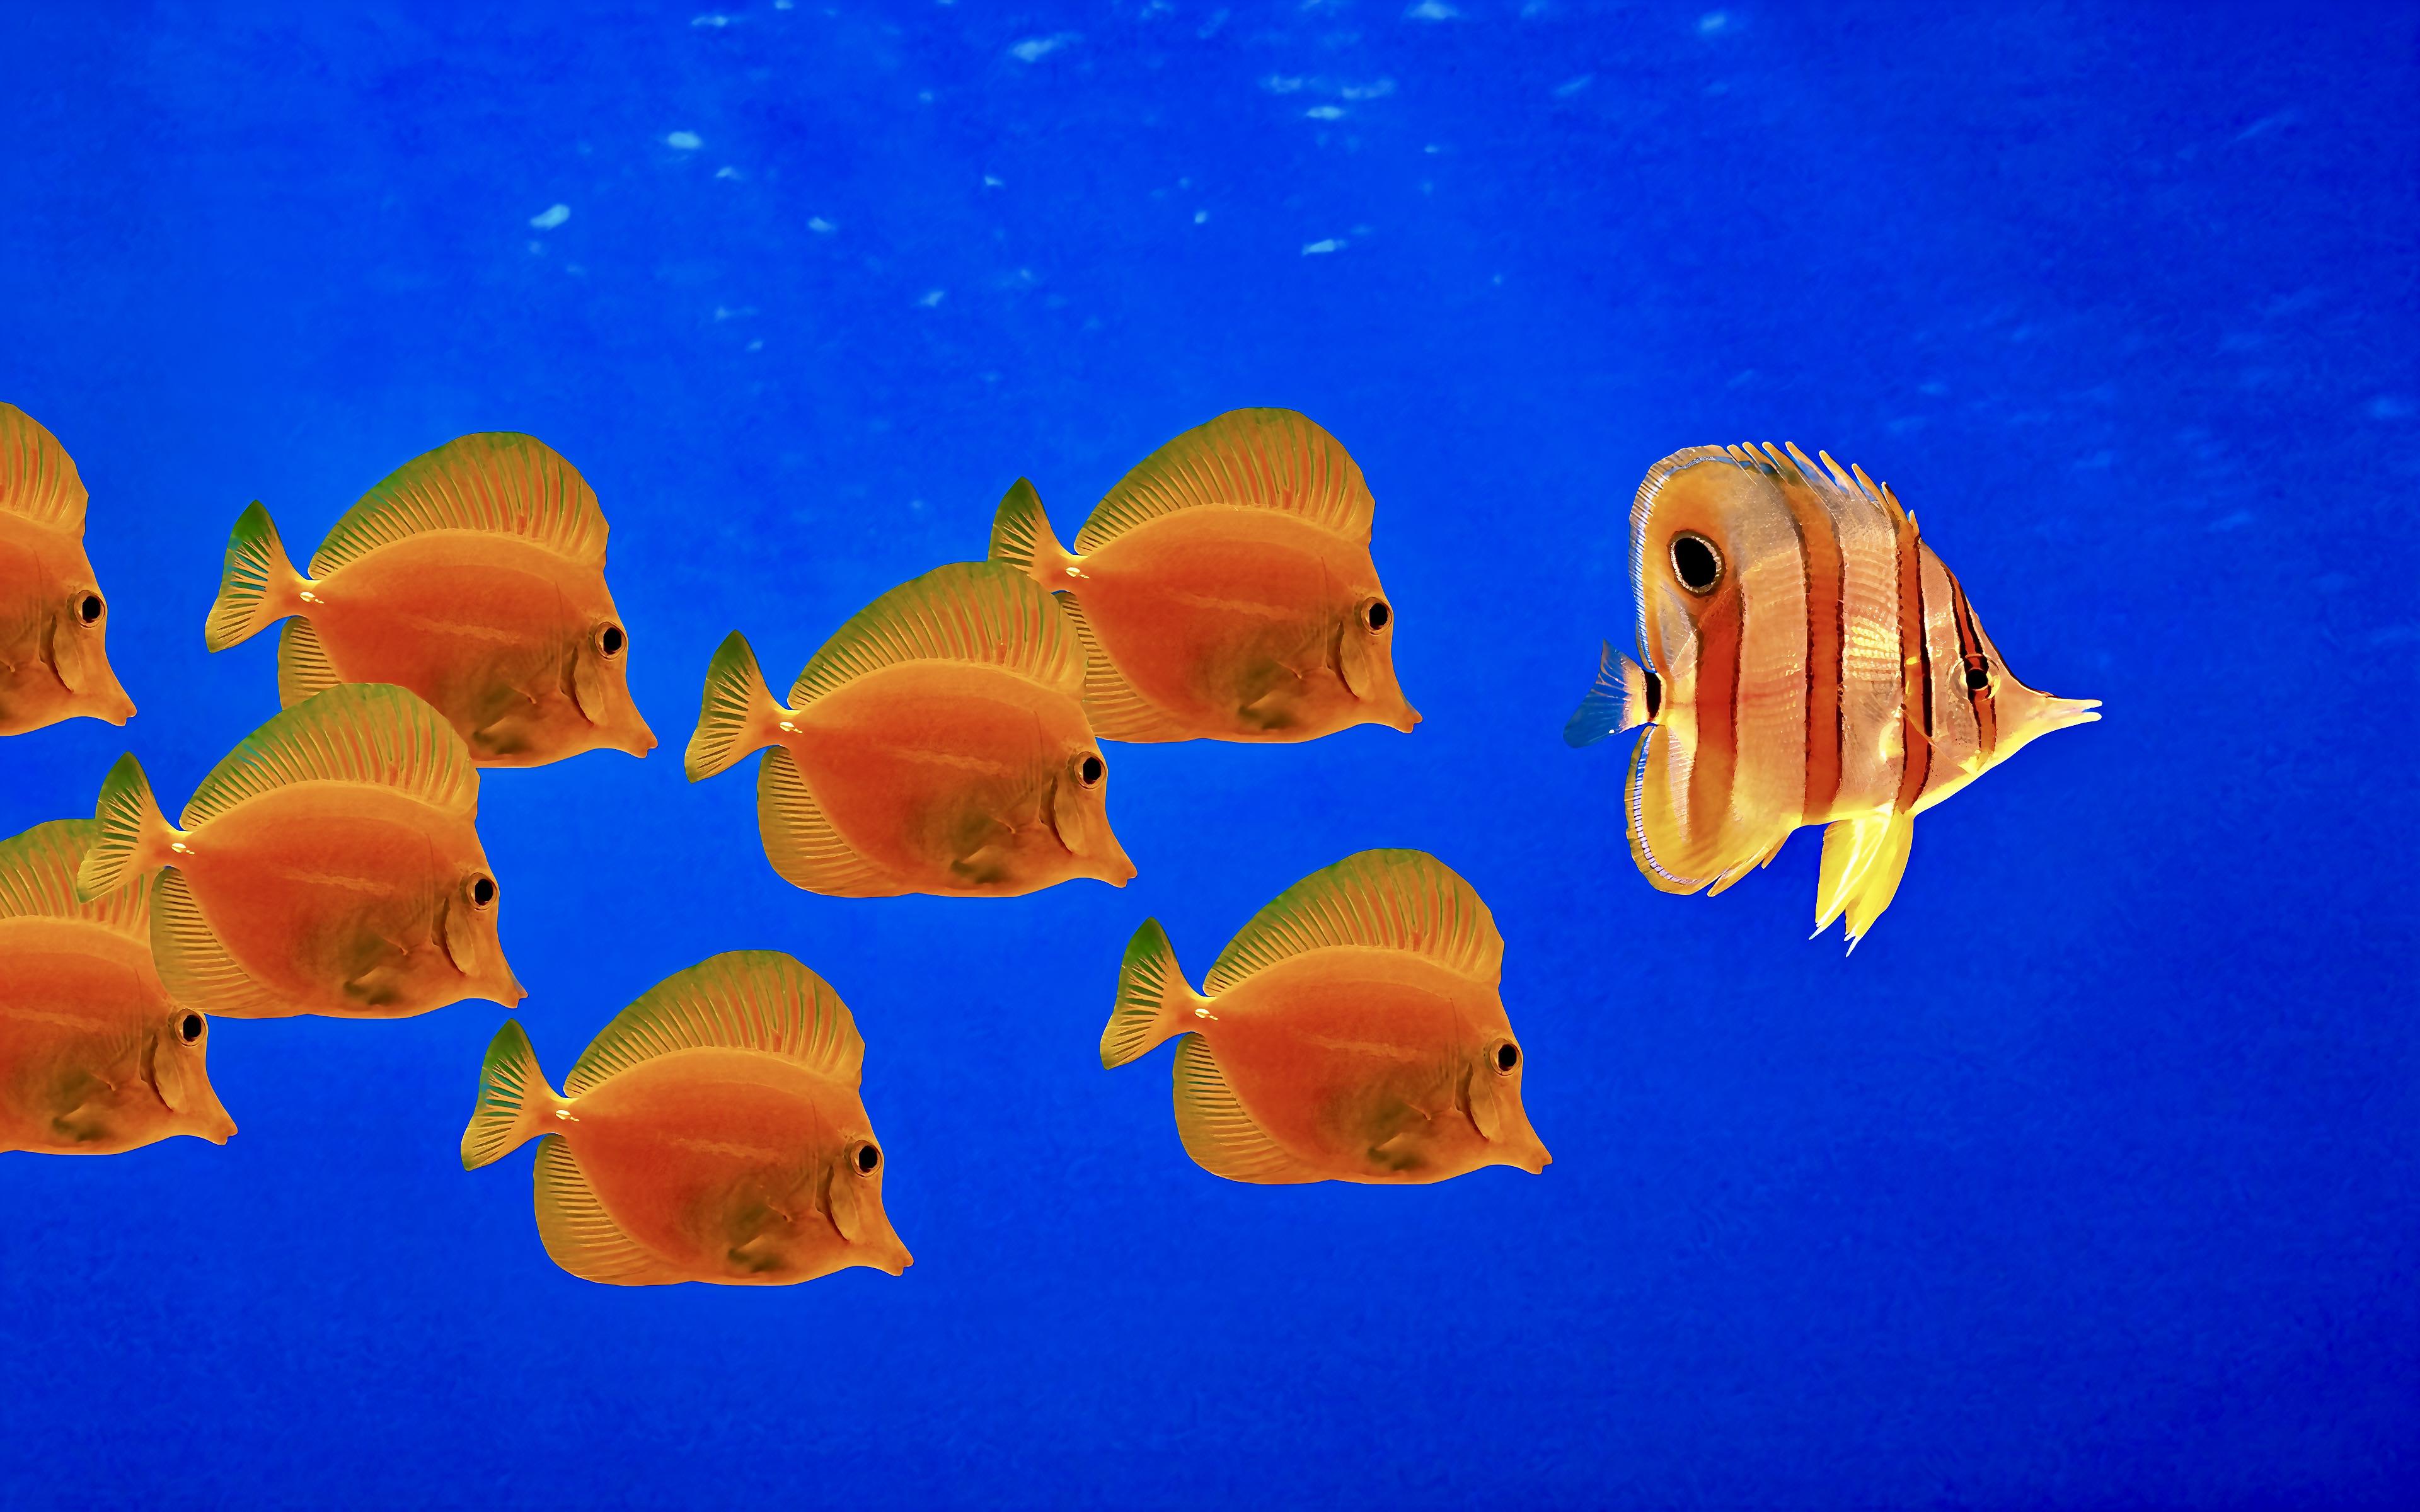 General 3840x2400 Windows XP underwater water minimalism fish animals simple background